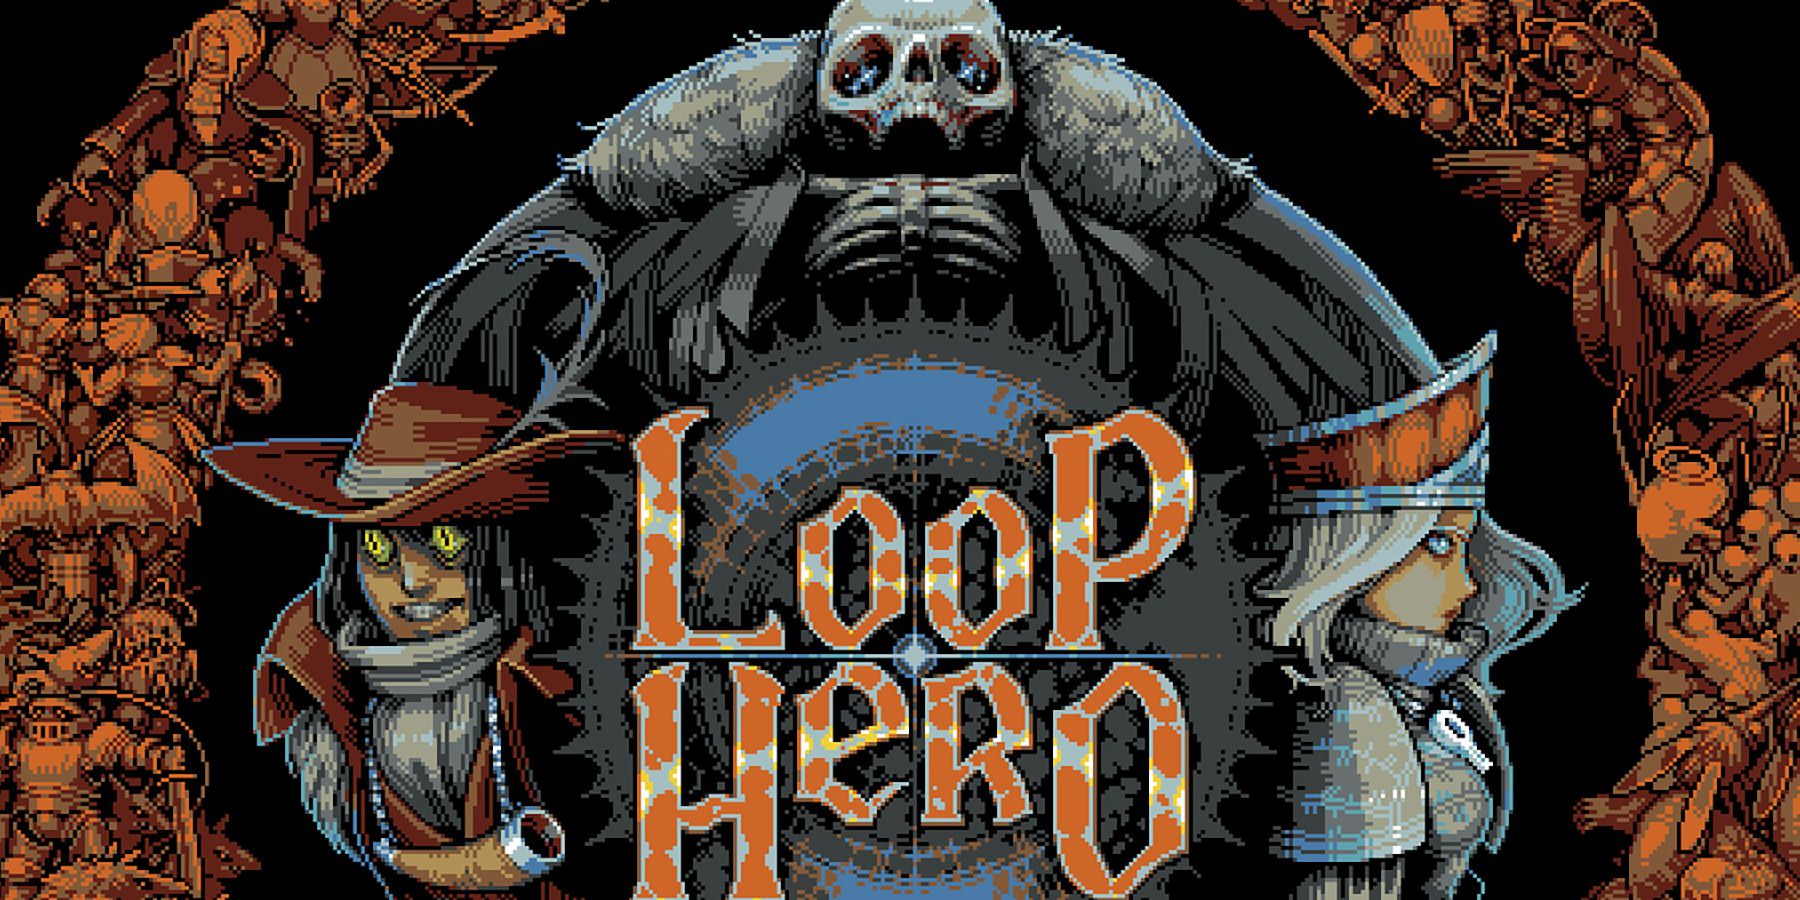 loop hero devs ask for pirating